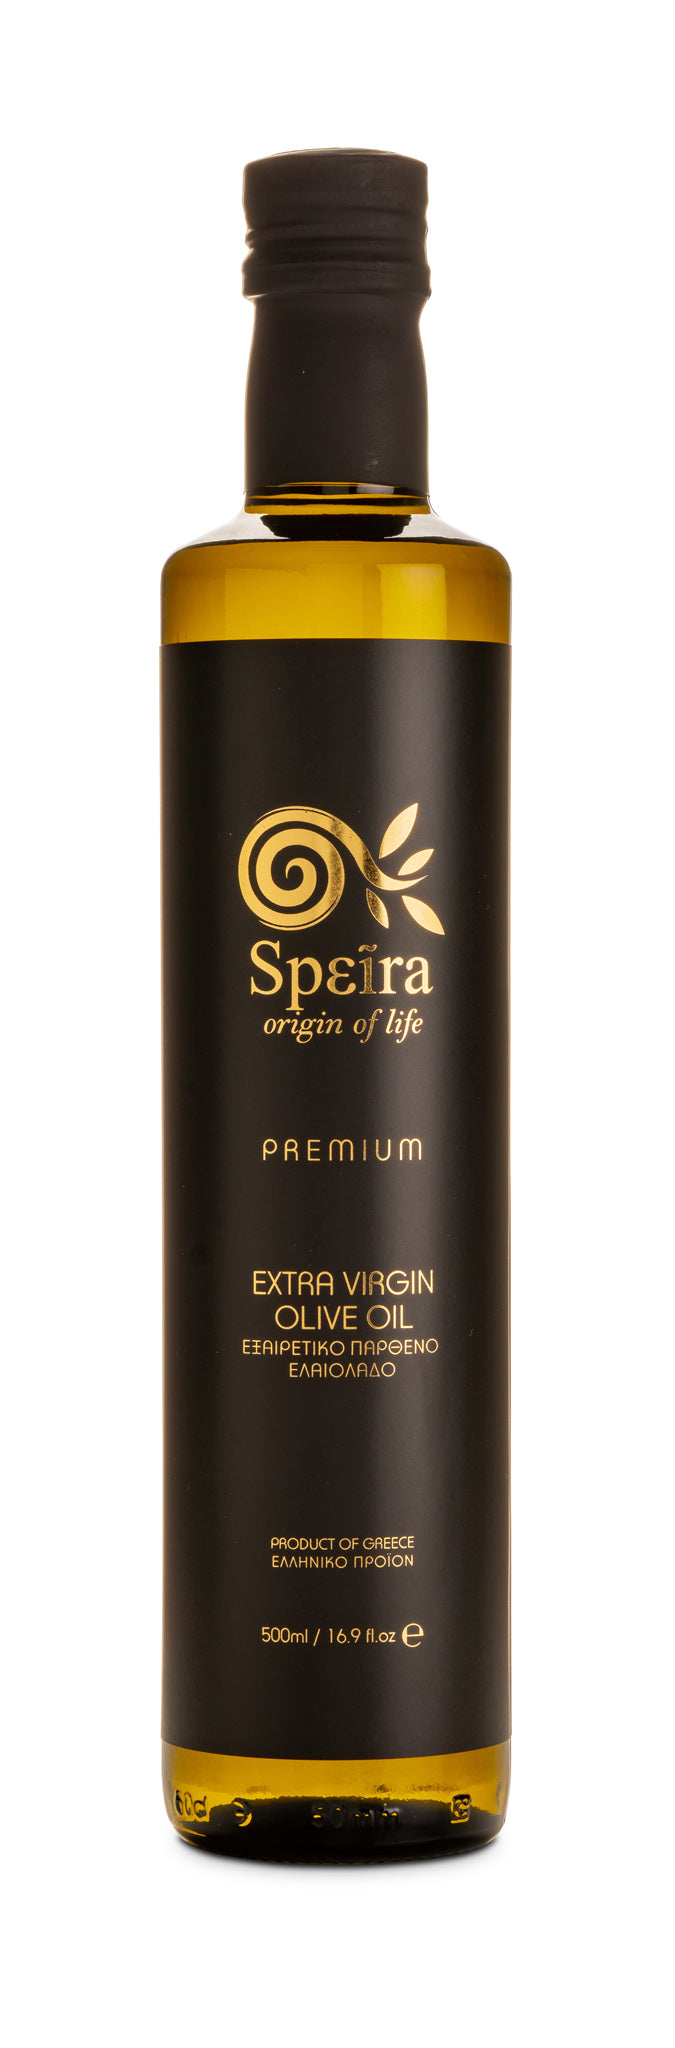 Speira Premium